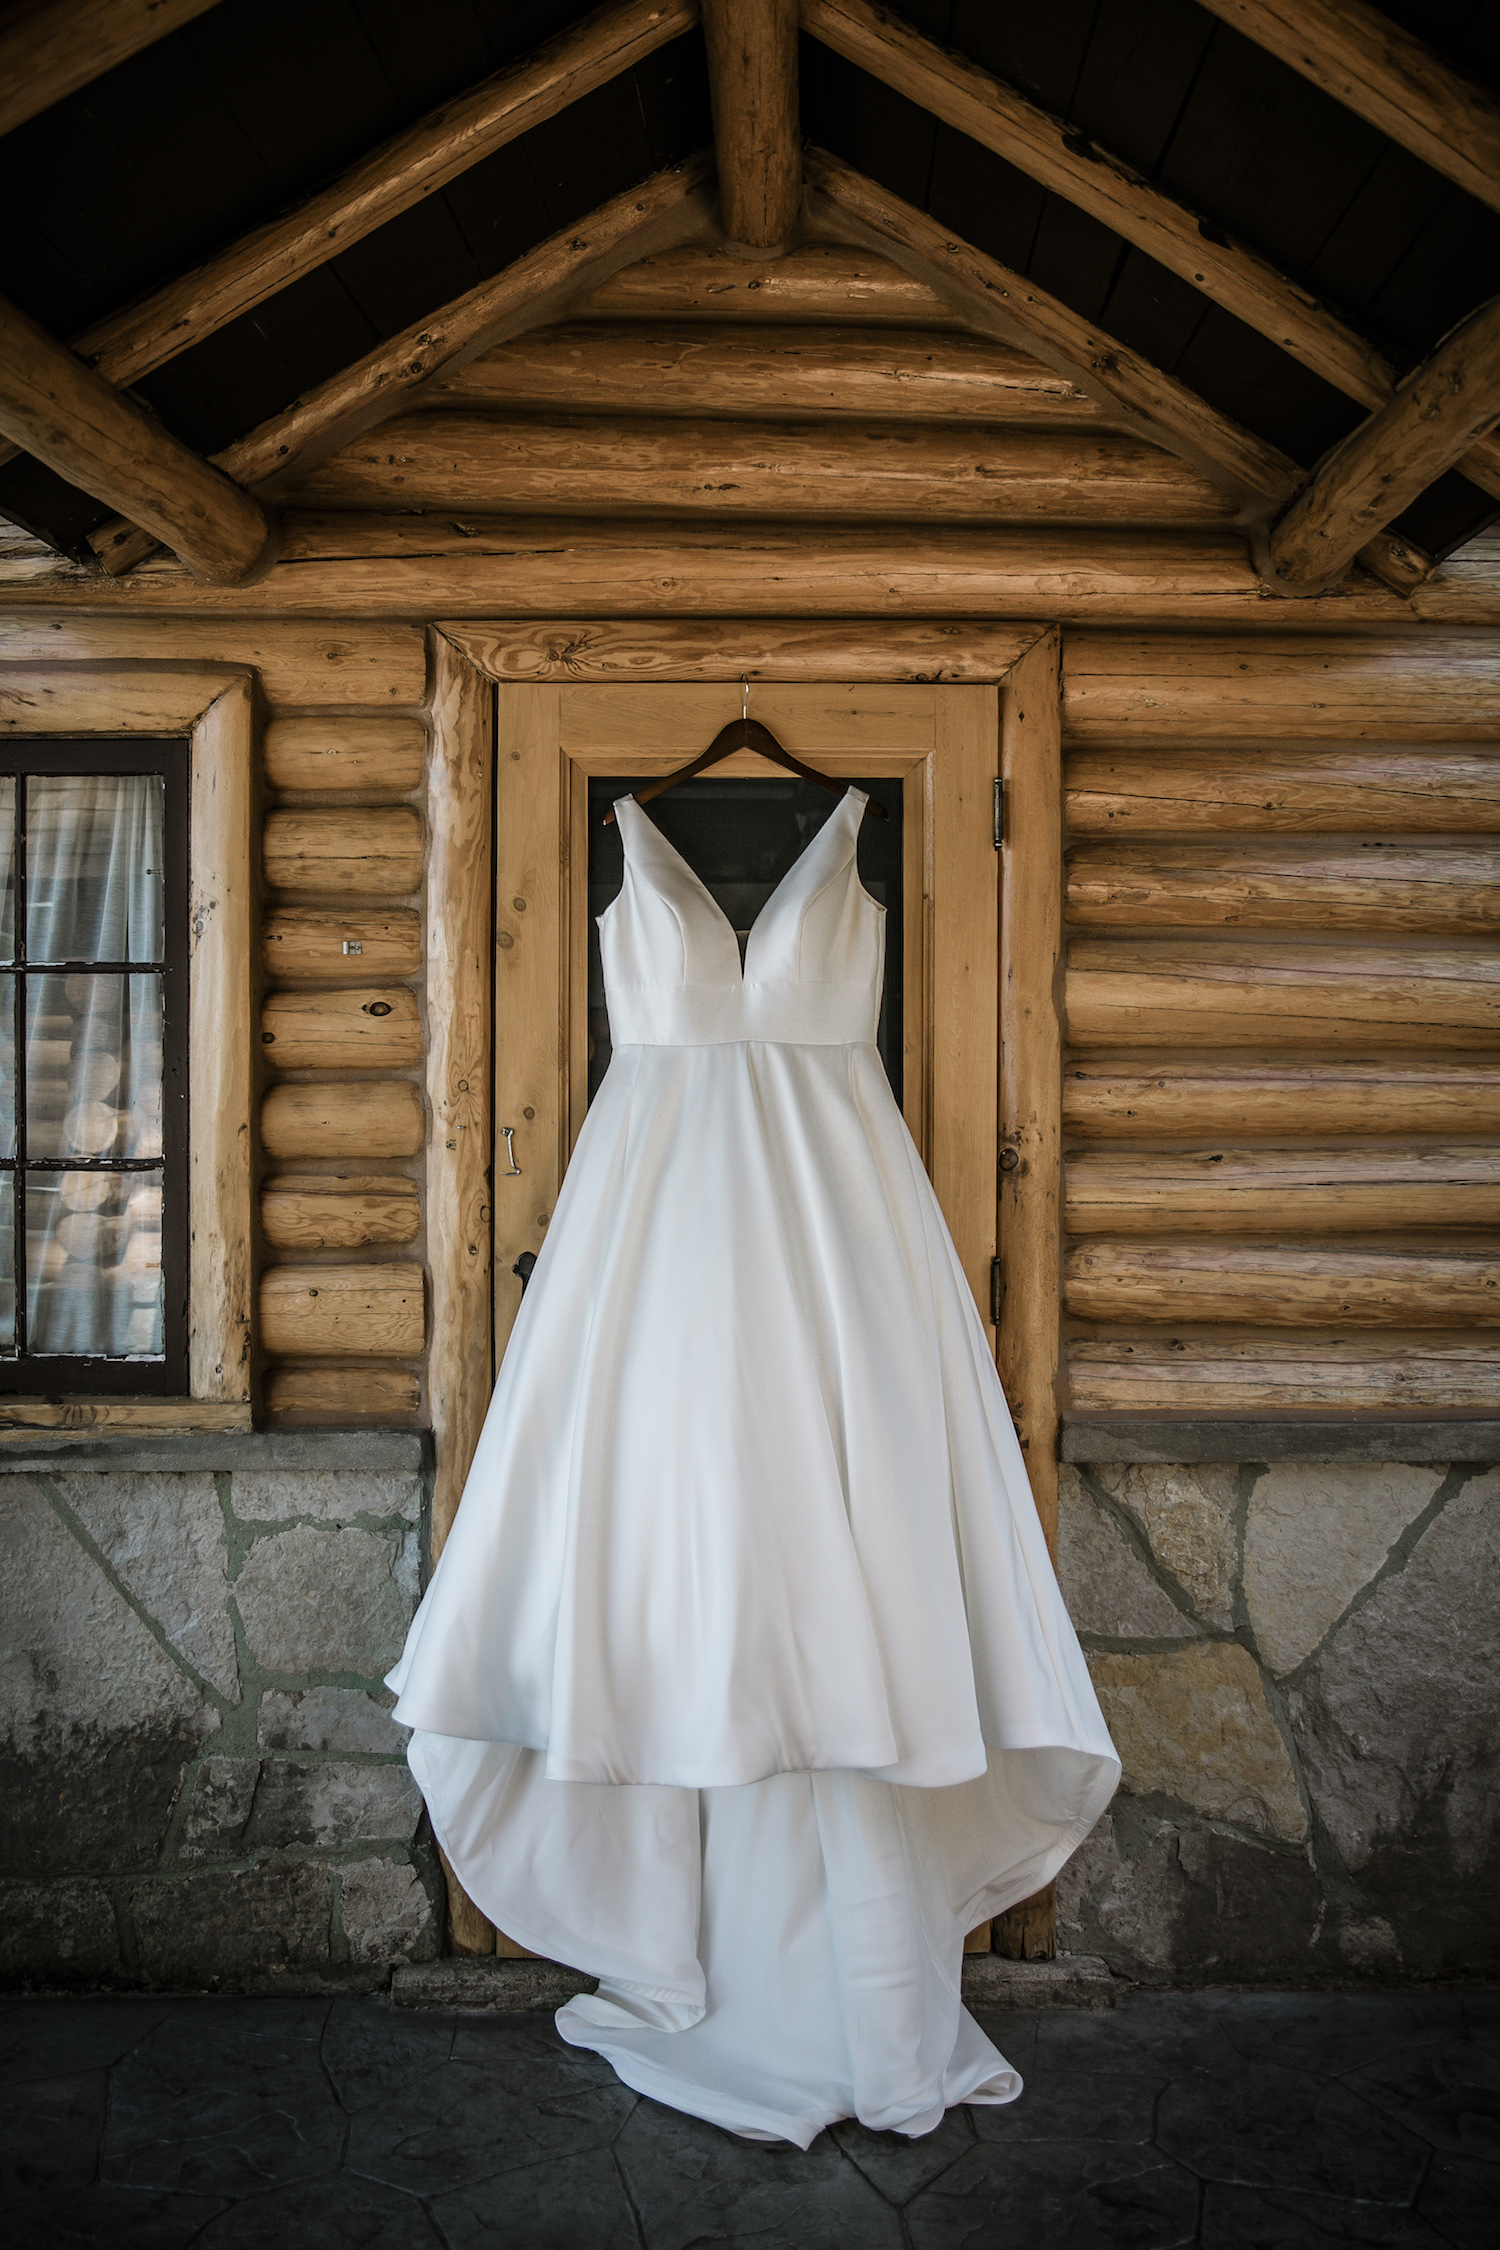 Bride's dress hanging on cabin door